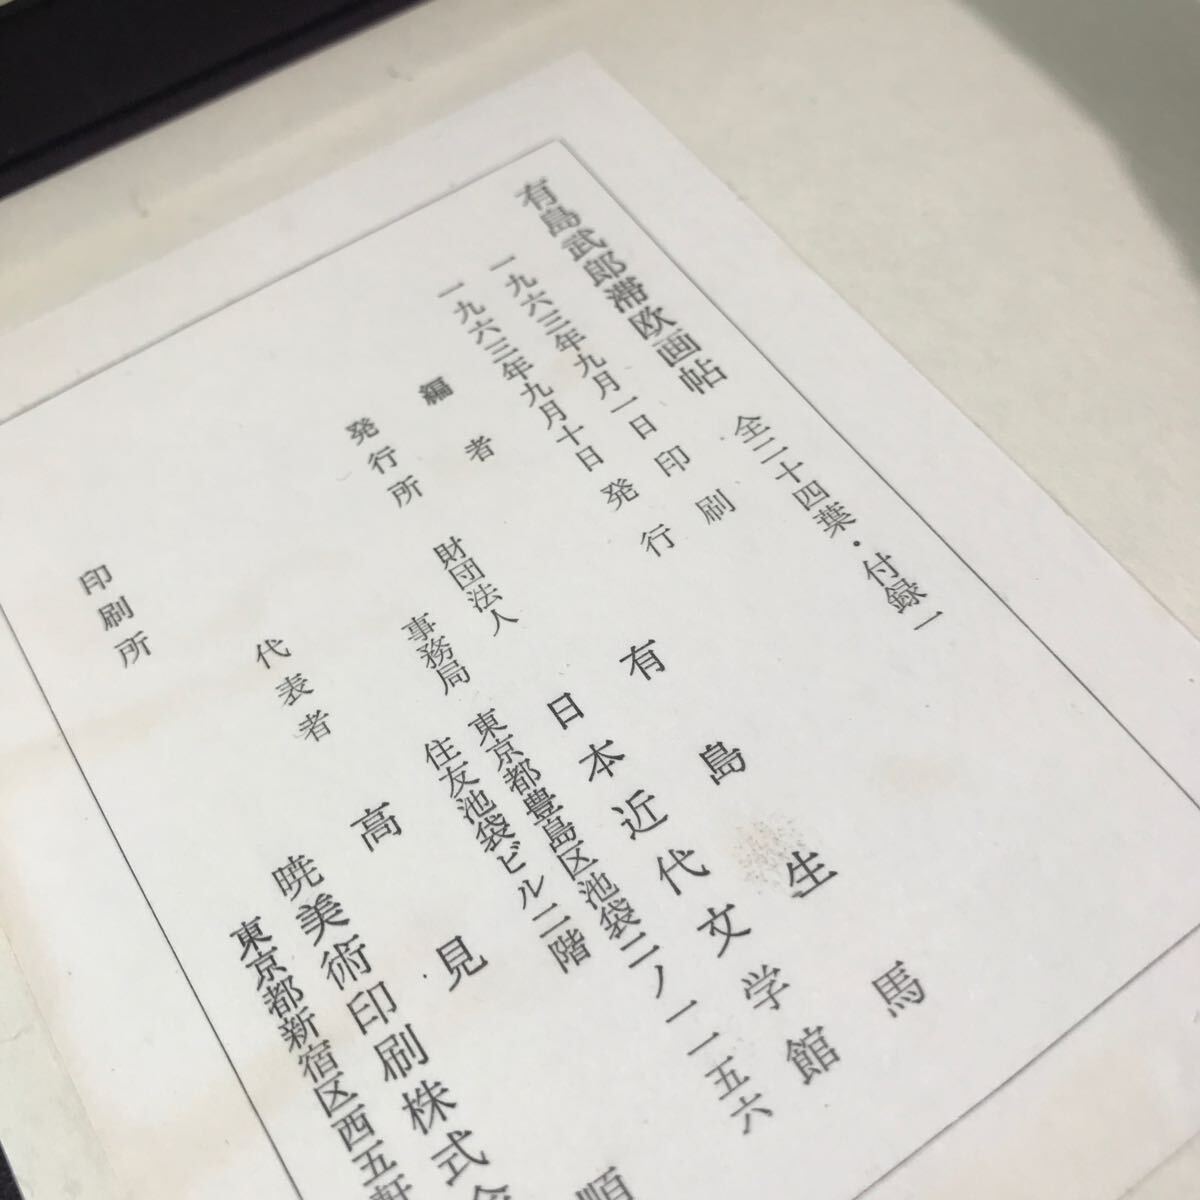 R18^ Arishima Takeo .... все 2 10 4 лист * дополнение имеется 1963 год 9 месяц выпуск иметь остров сырой лошадь / сборник человек объединение юридическое лицо Япония новое время литература павильон ^240511